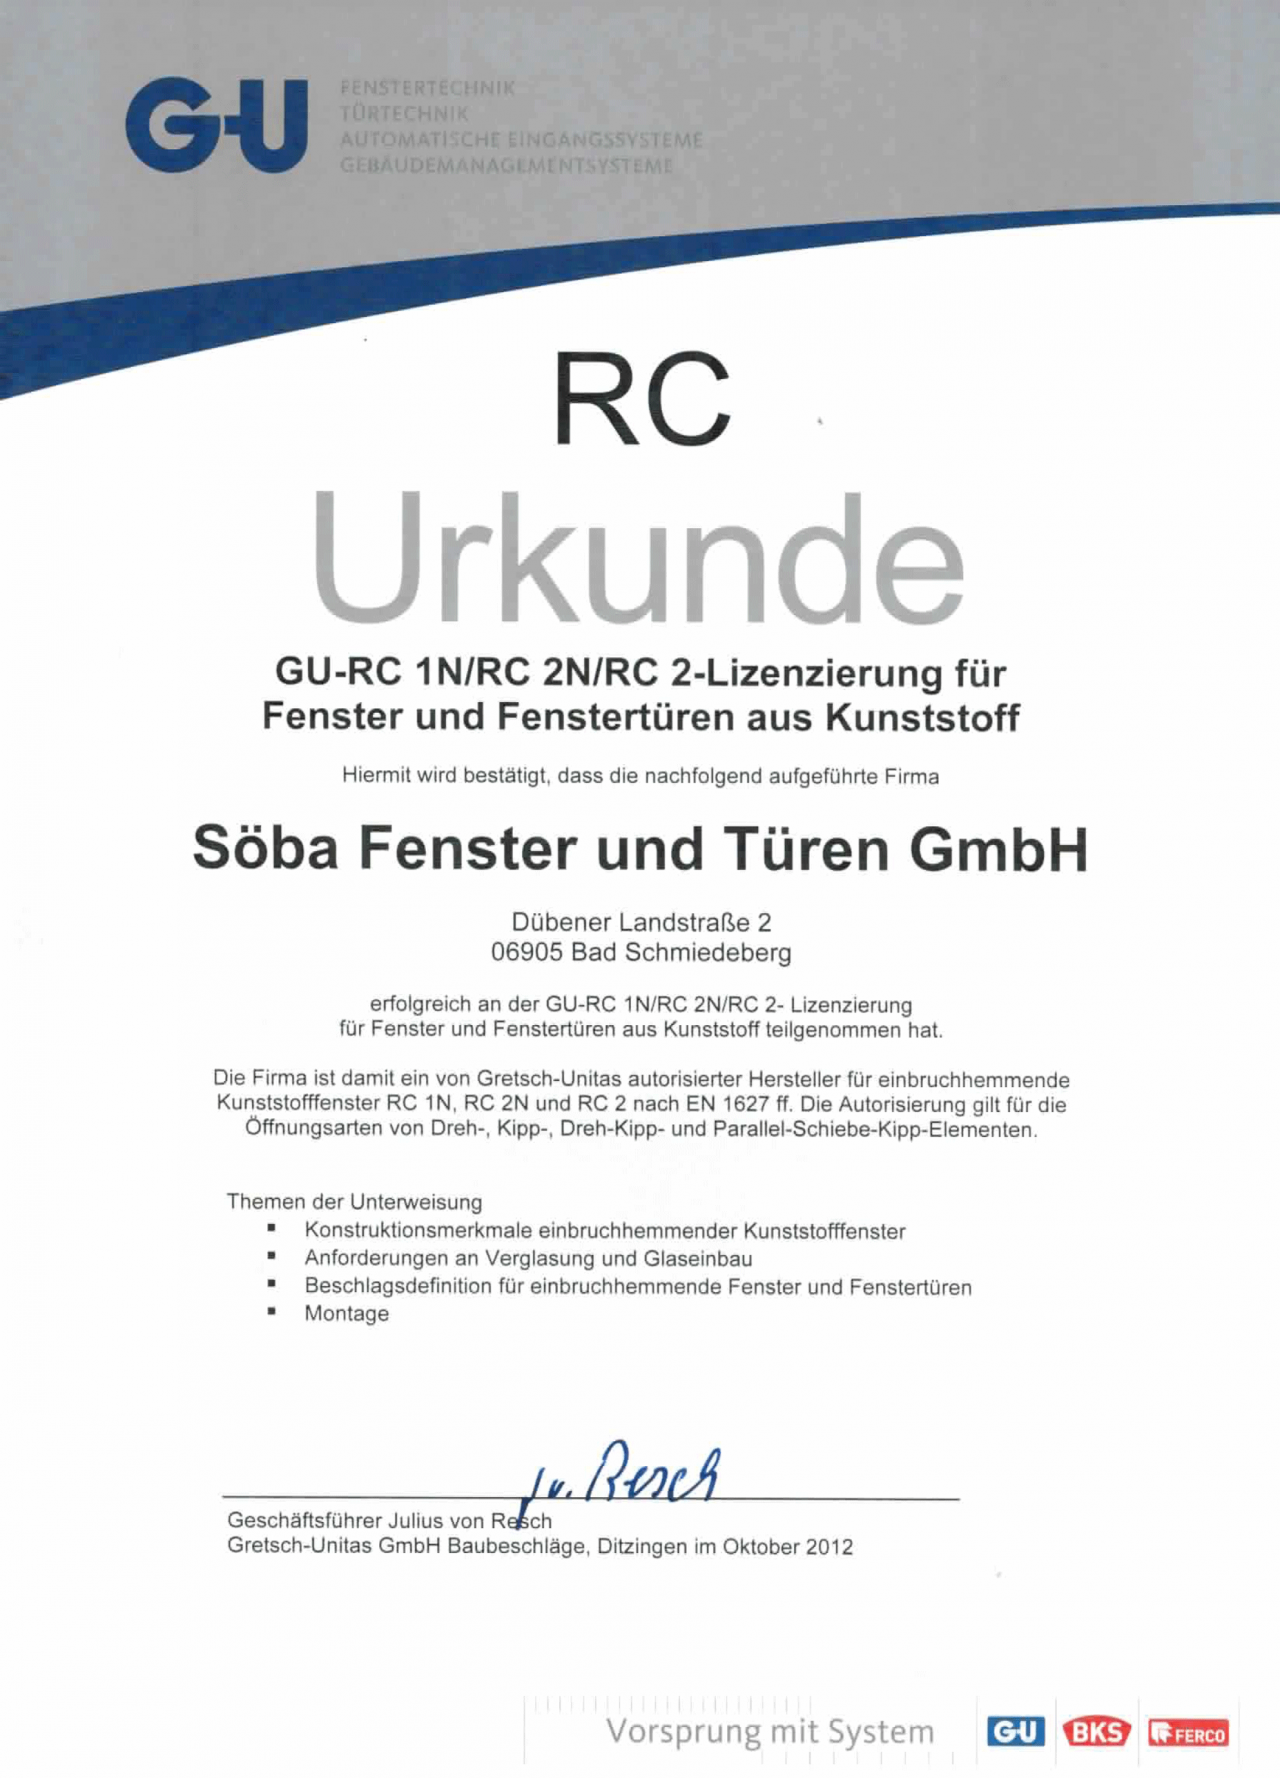 GU-Urkunde RC